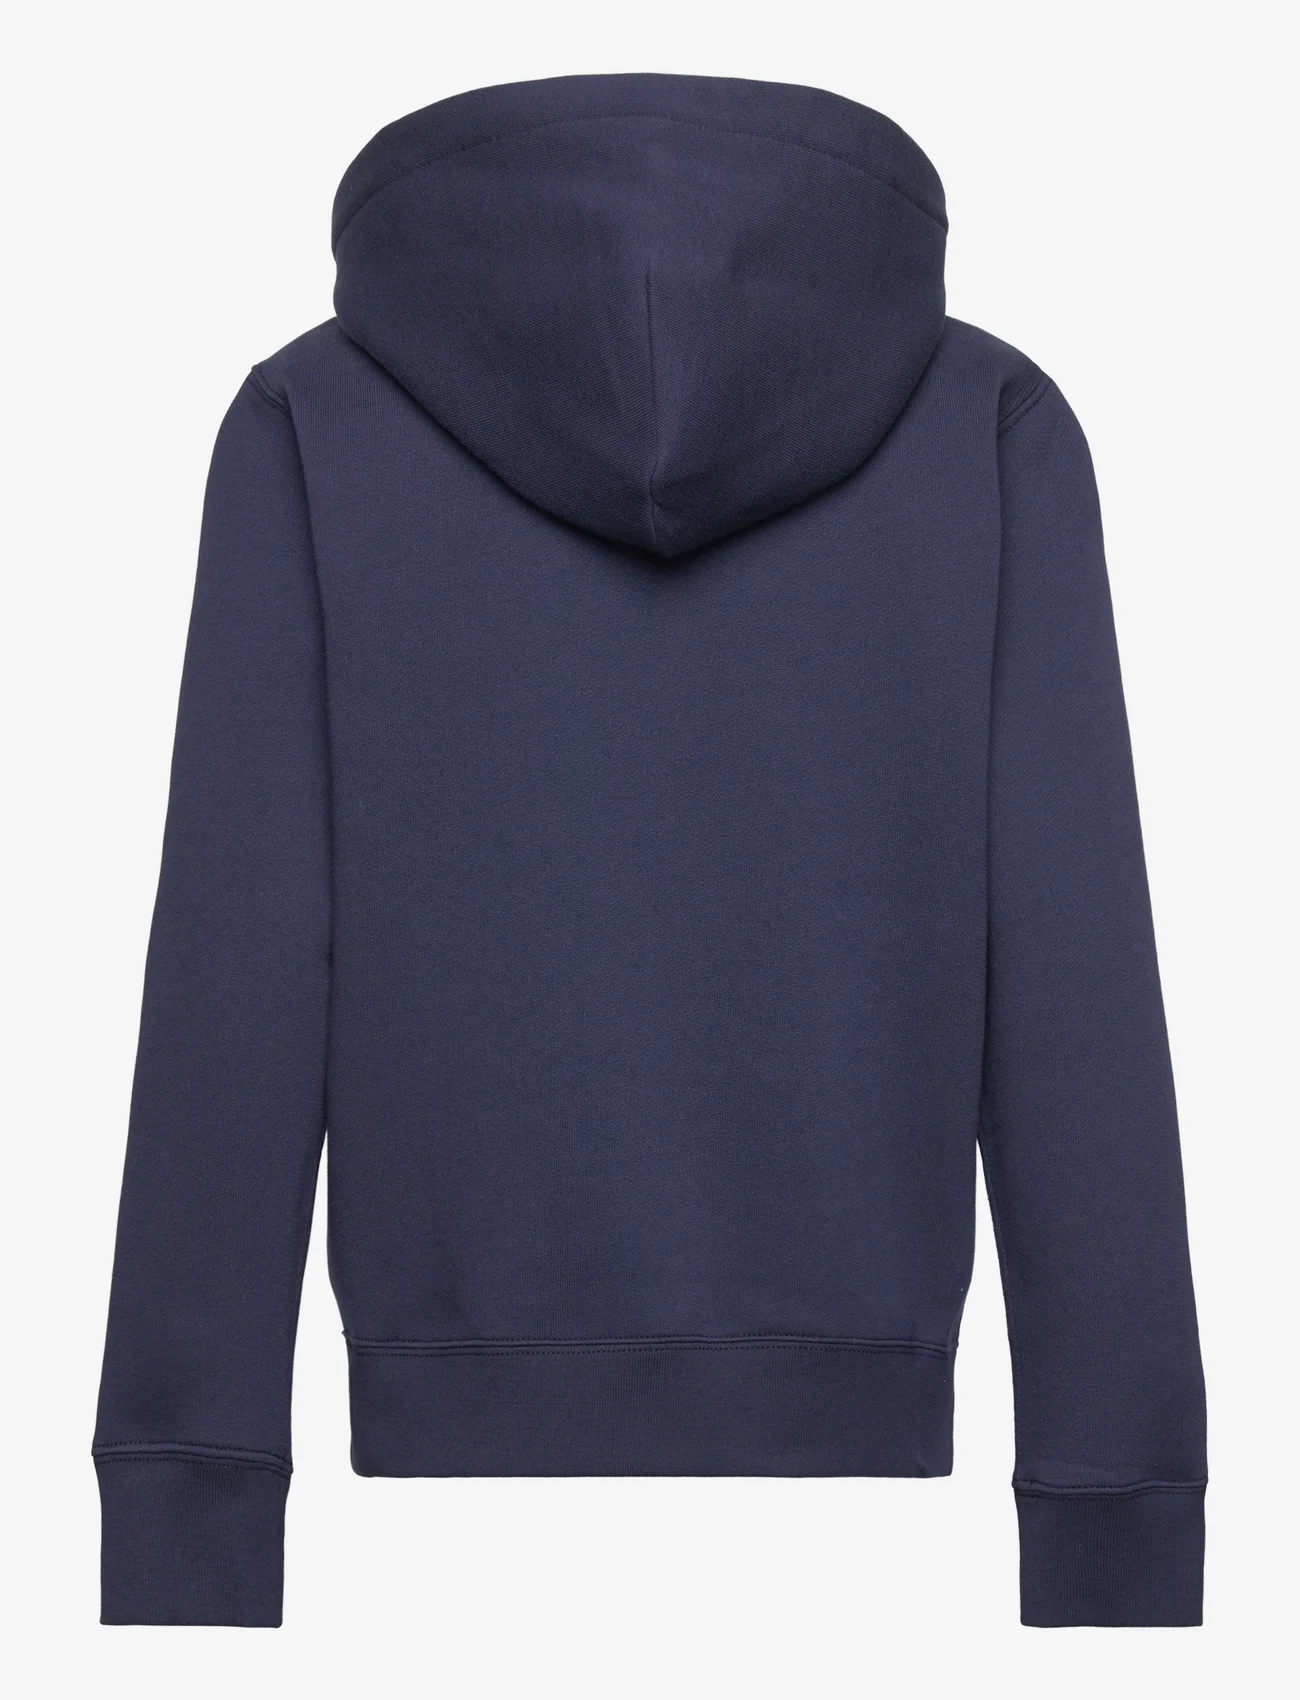 Ralph Lauren Kids - Fleece Hoodie - hoodies - refined navy/c173 - 1